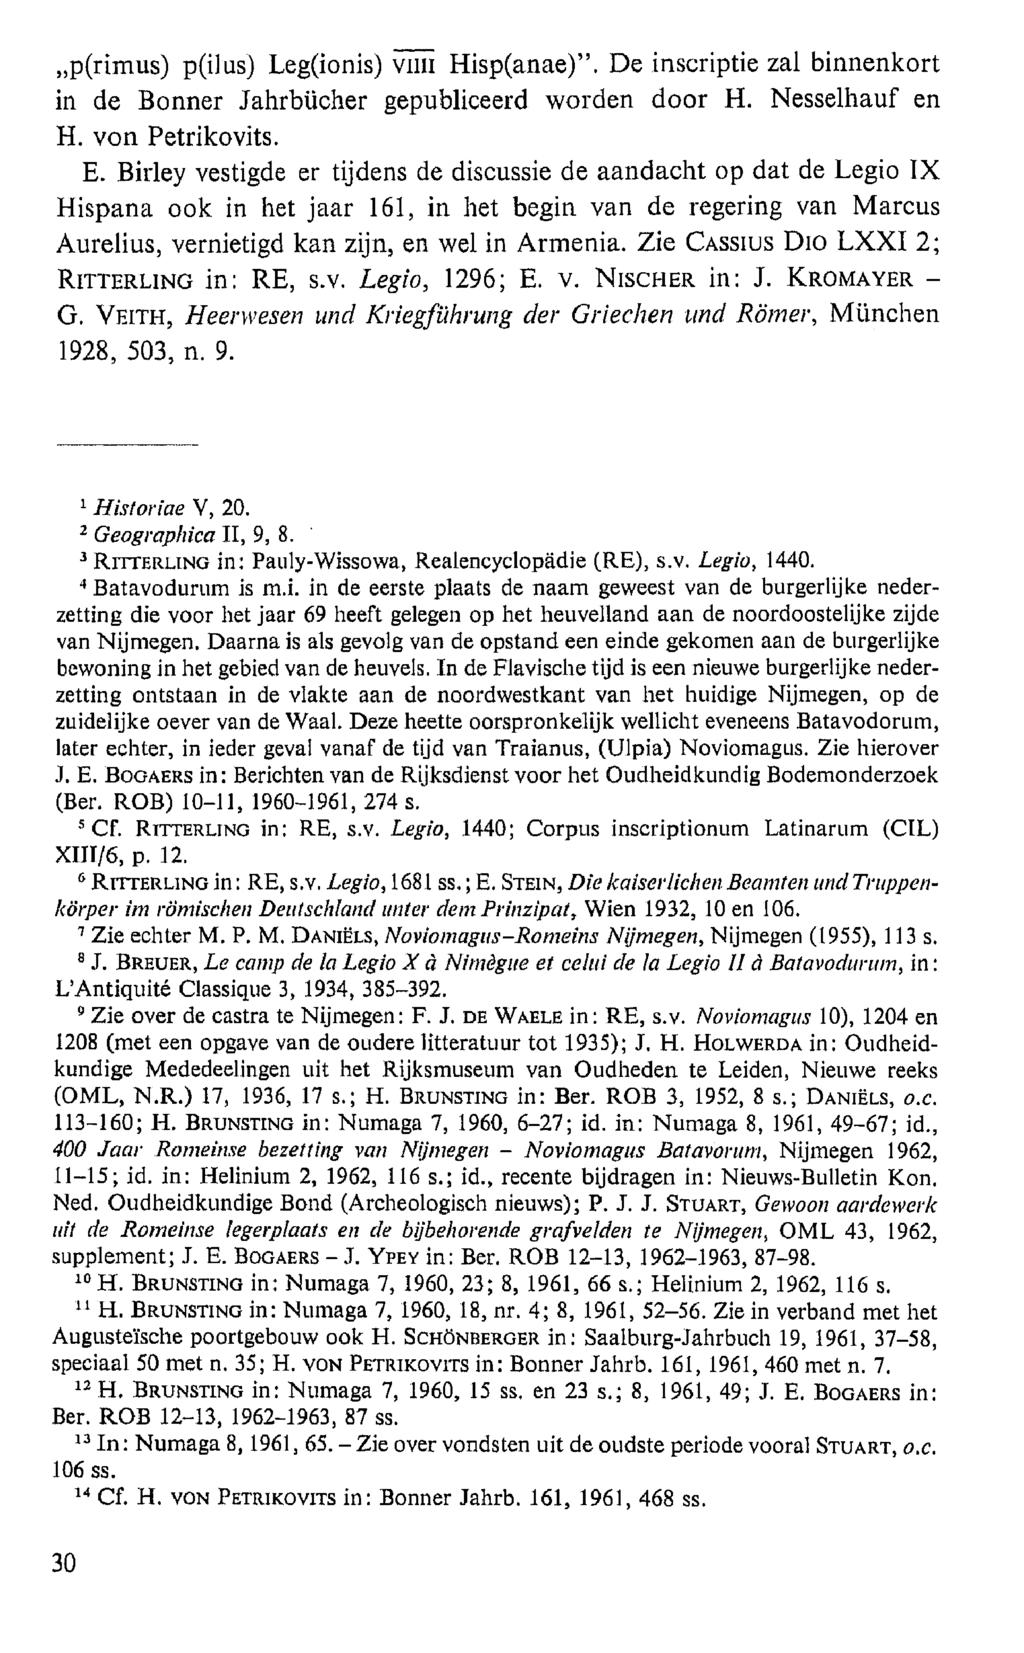 p(rimus) p(ilus) Leg(ionis) vim Hisp(anae). De inscriptie zal binnenkort in de Bonner Jahrbücher gepubliceerd worden door H. Nesselhauf en H. von Petrikovits. E.